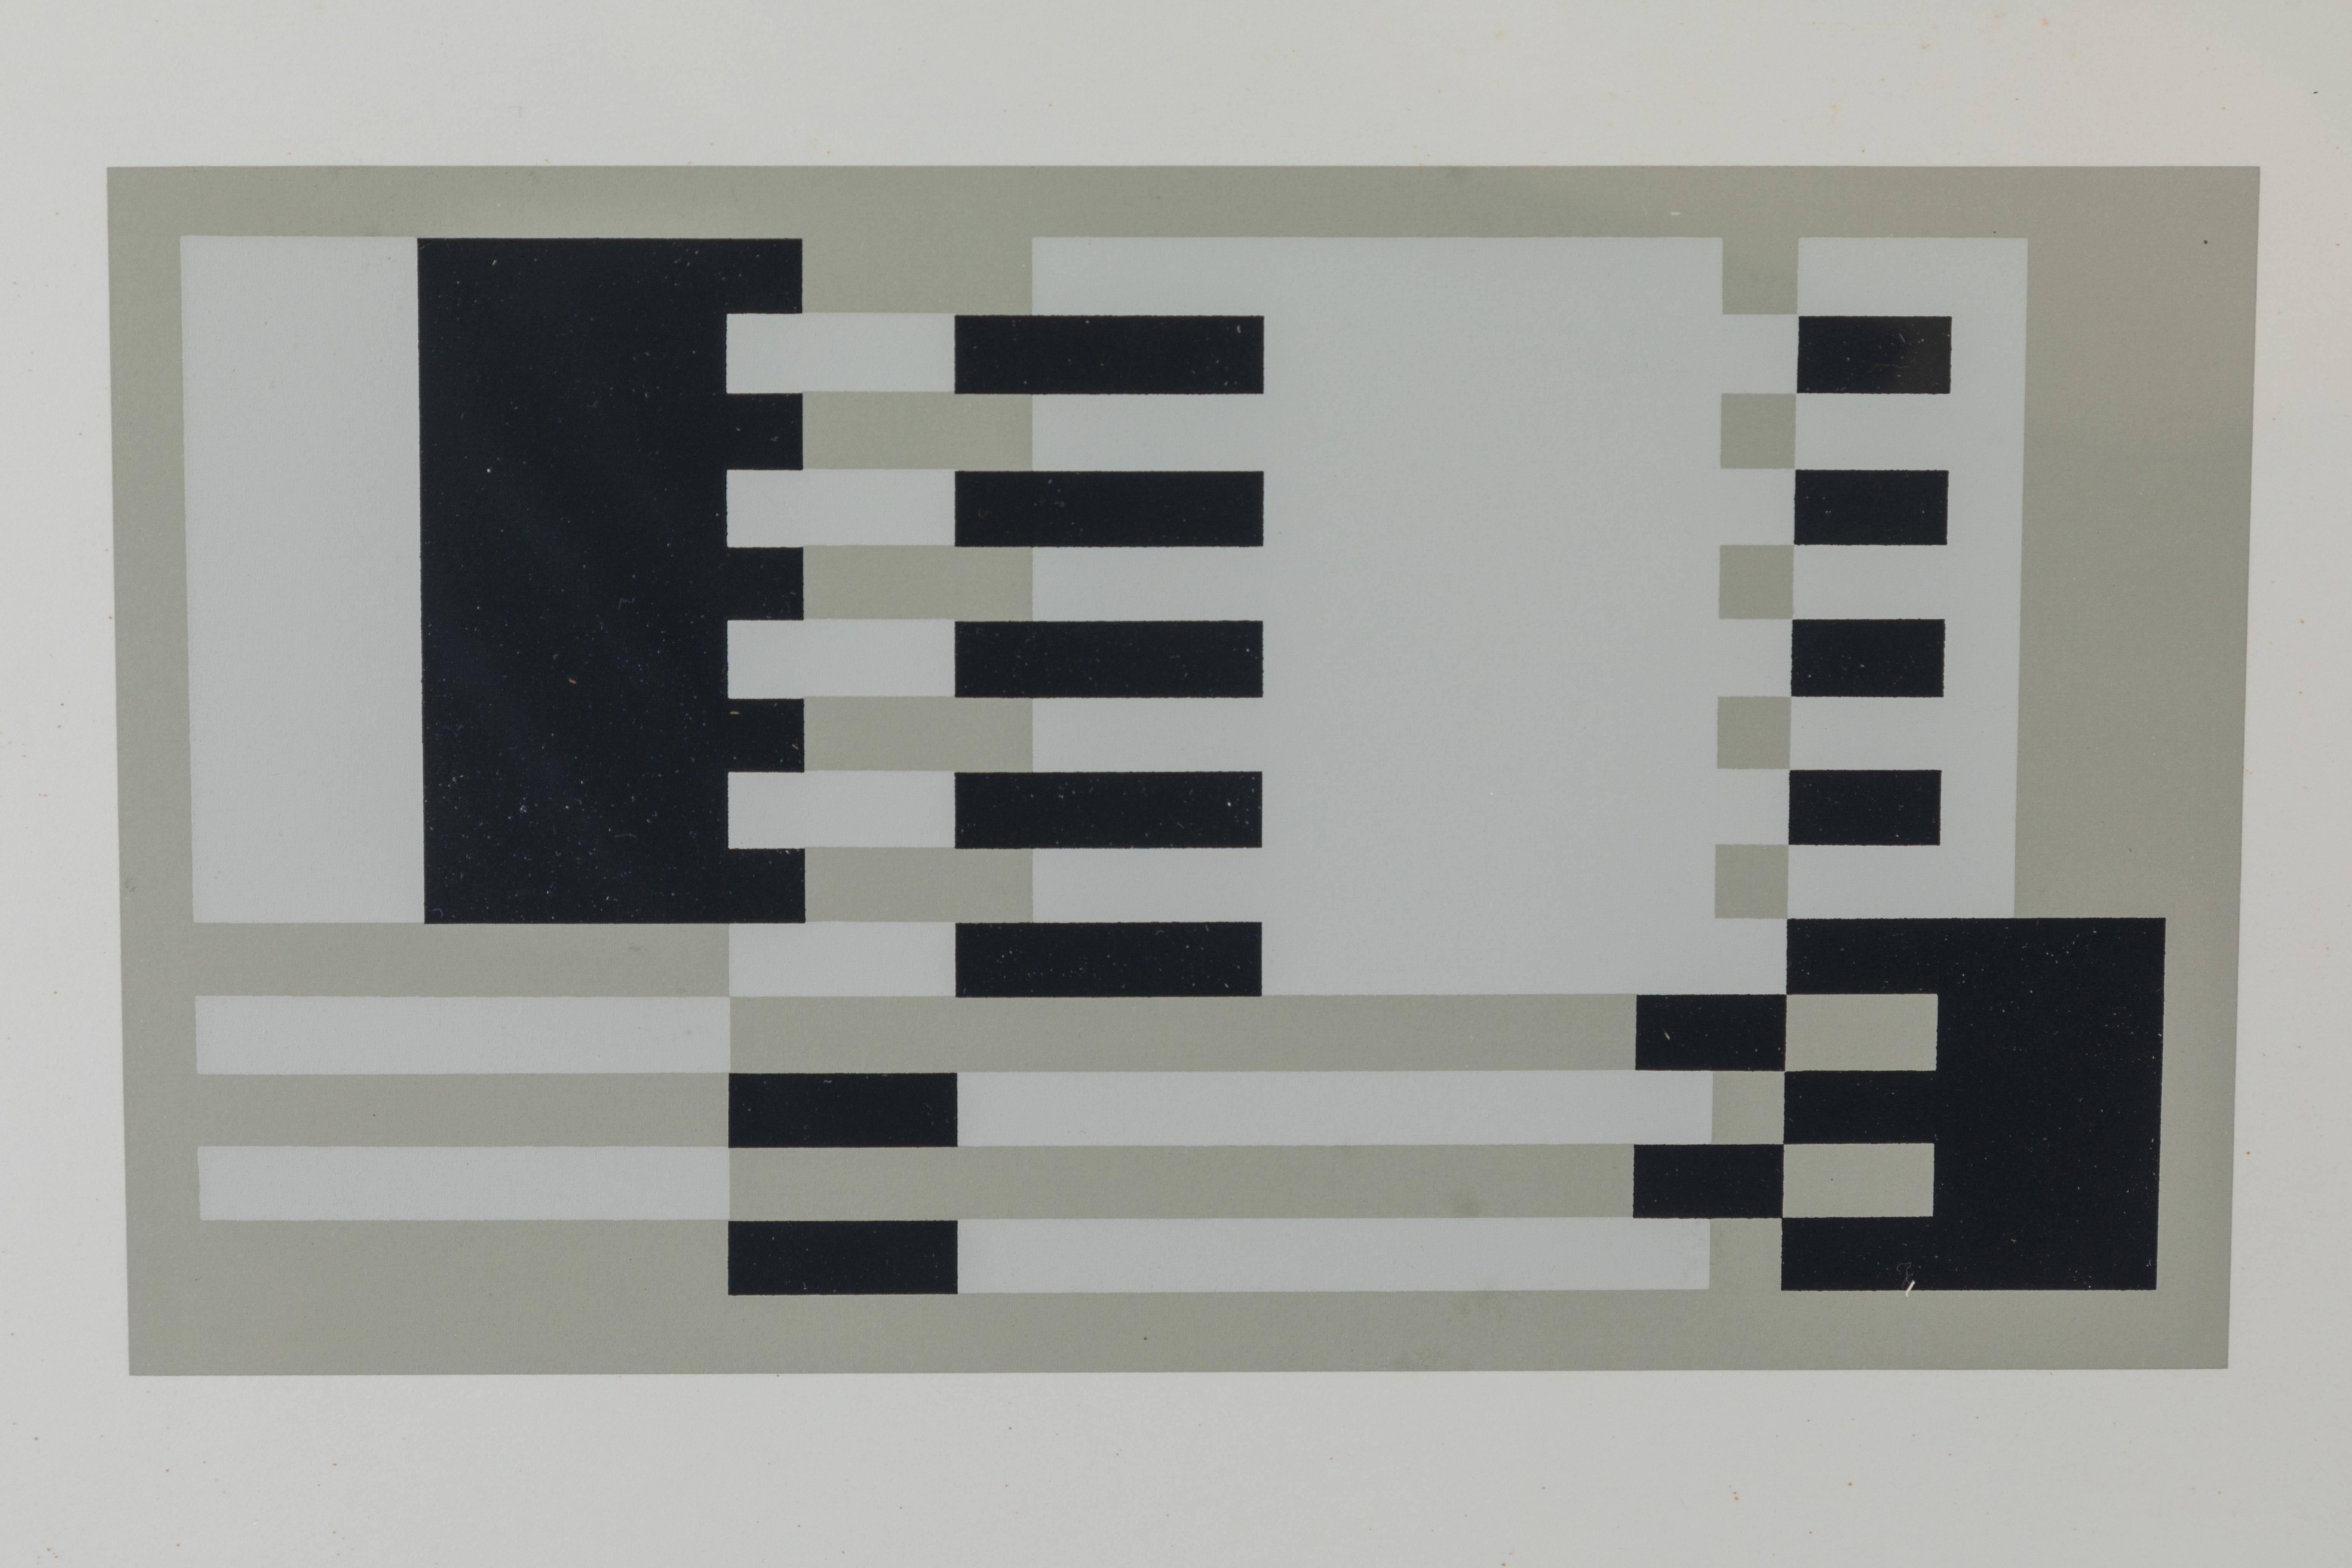 Silkscreen print from formulation articulation by Josef Albers.